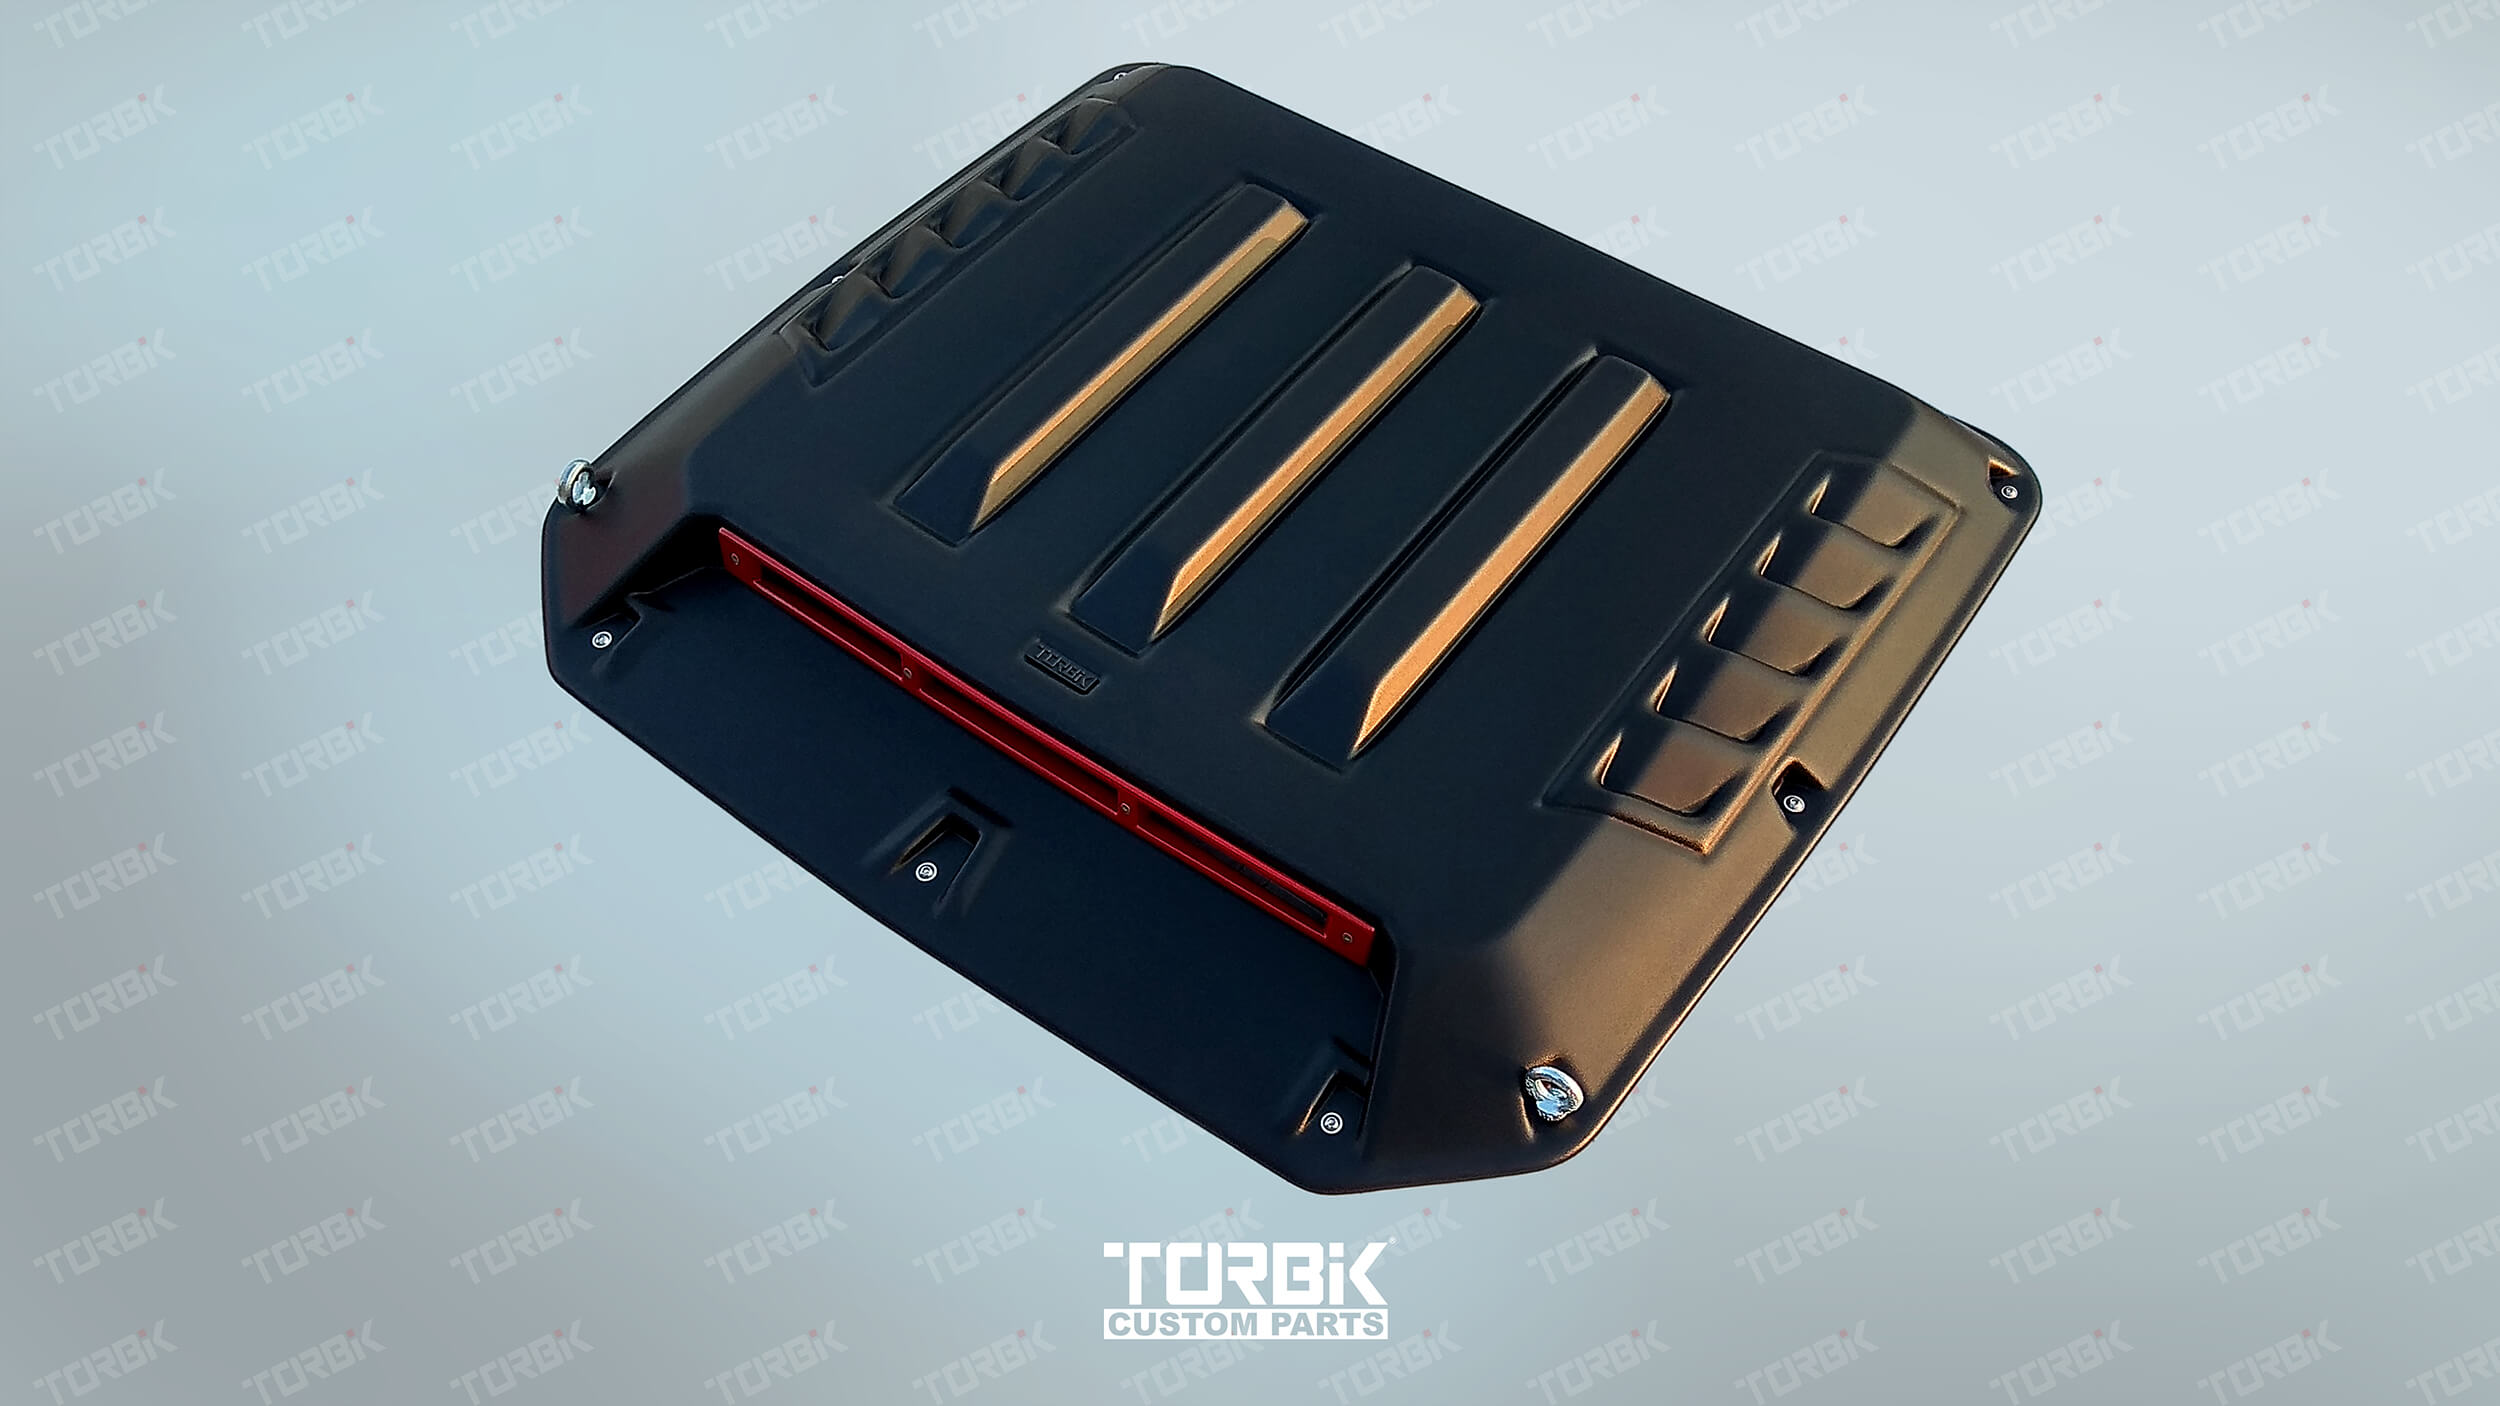 Накладка капота Torbik на lada 4x4